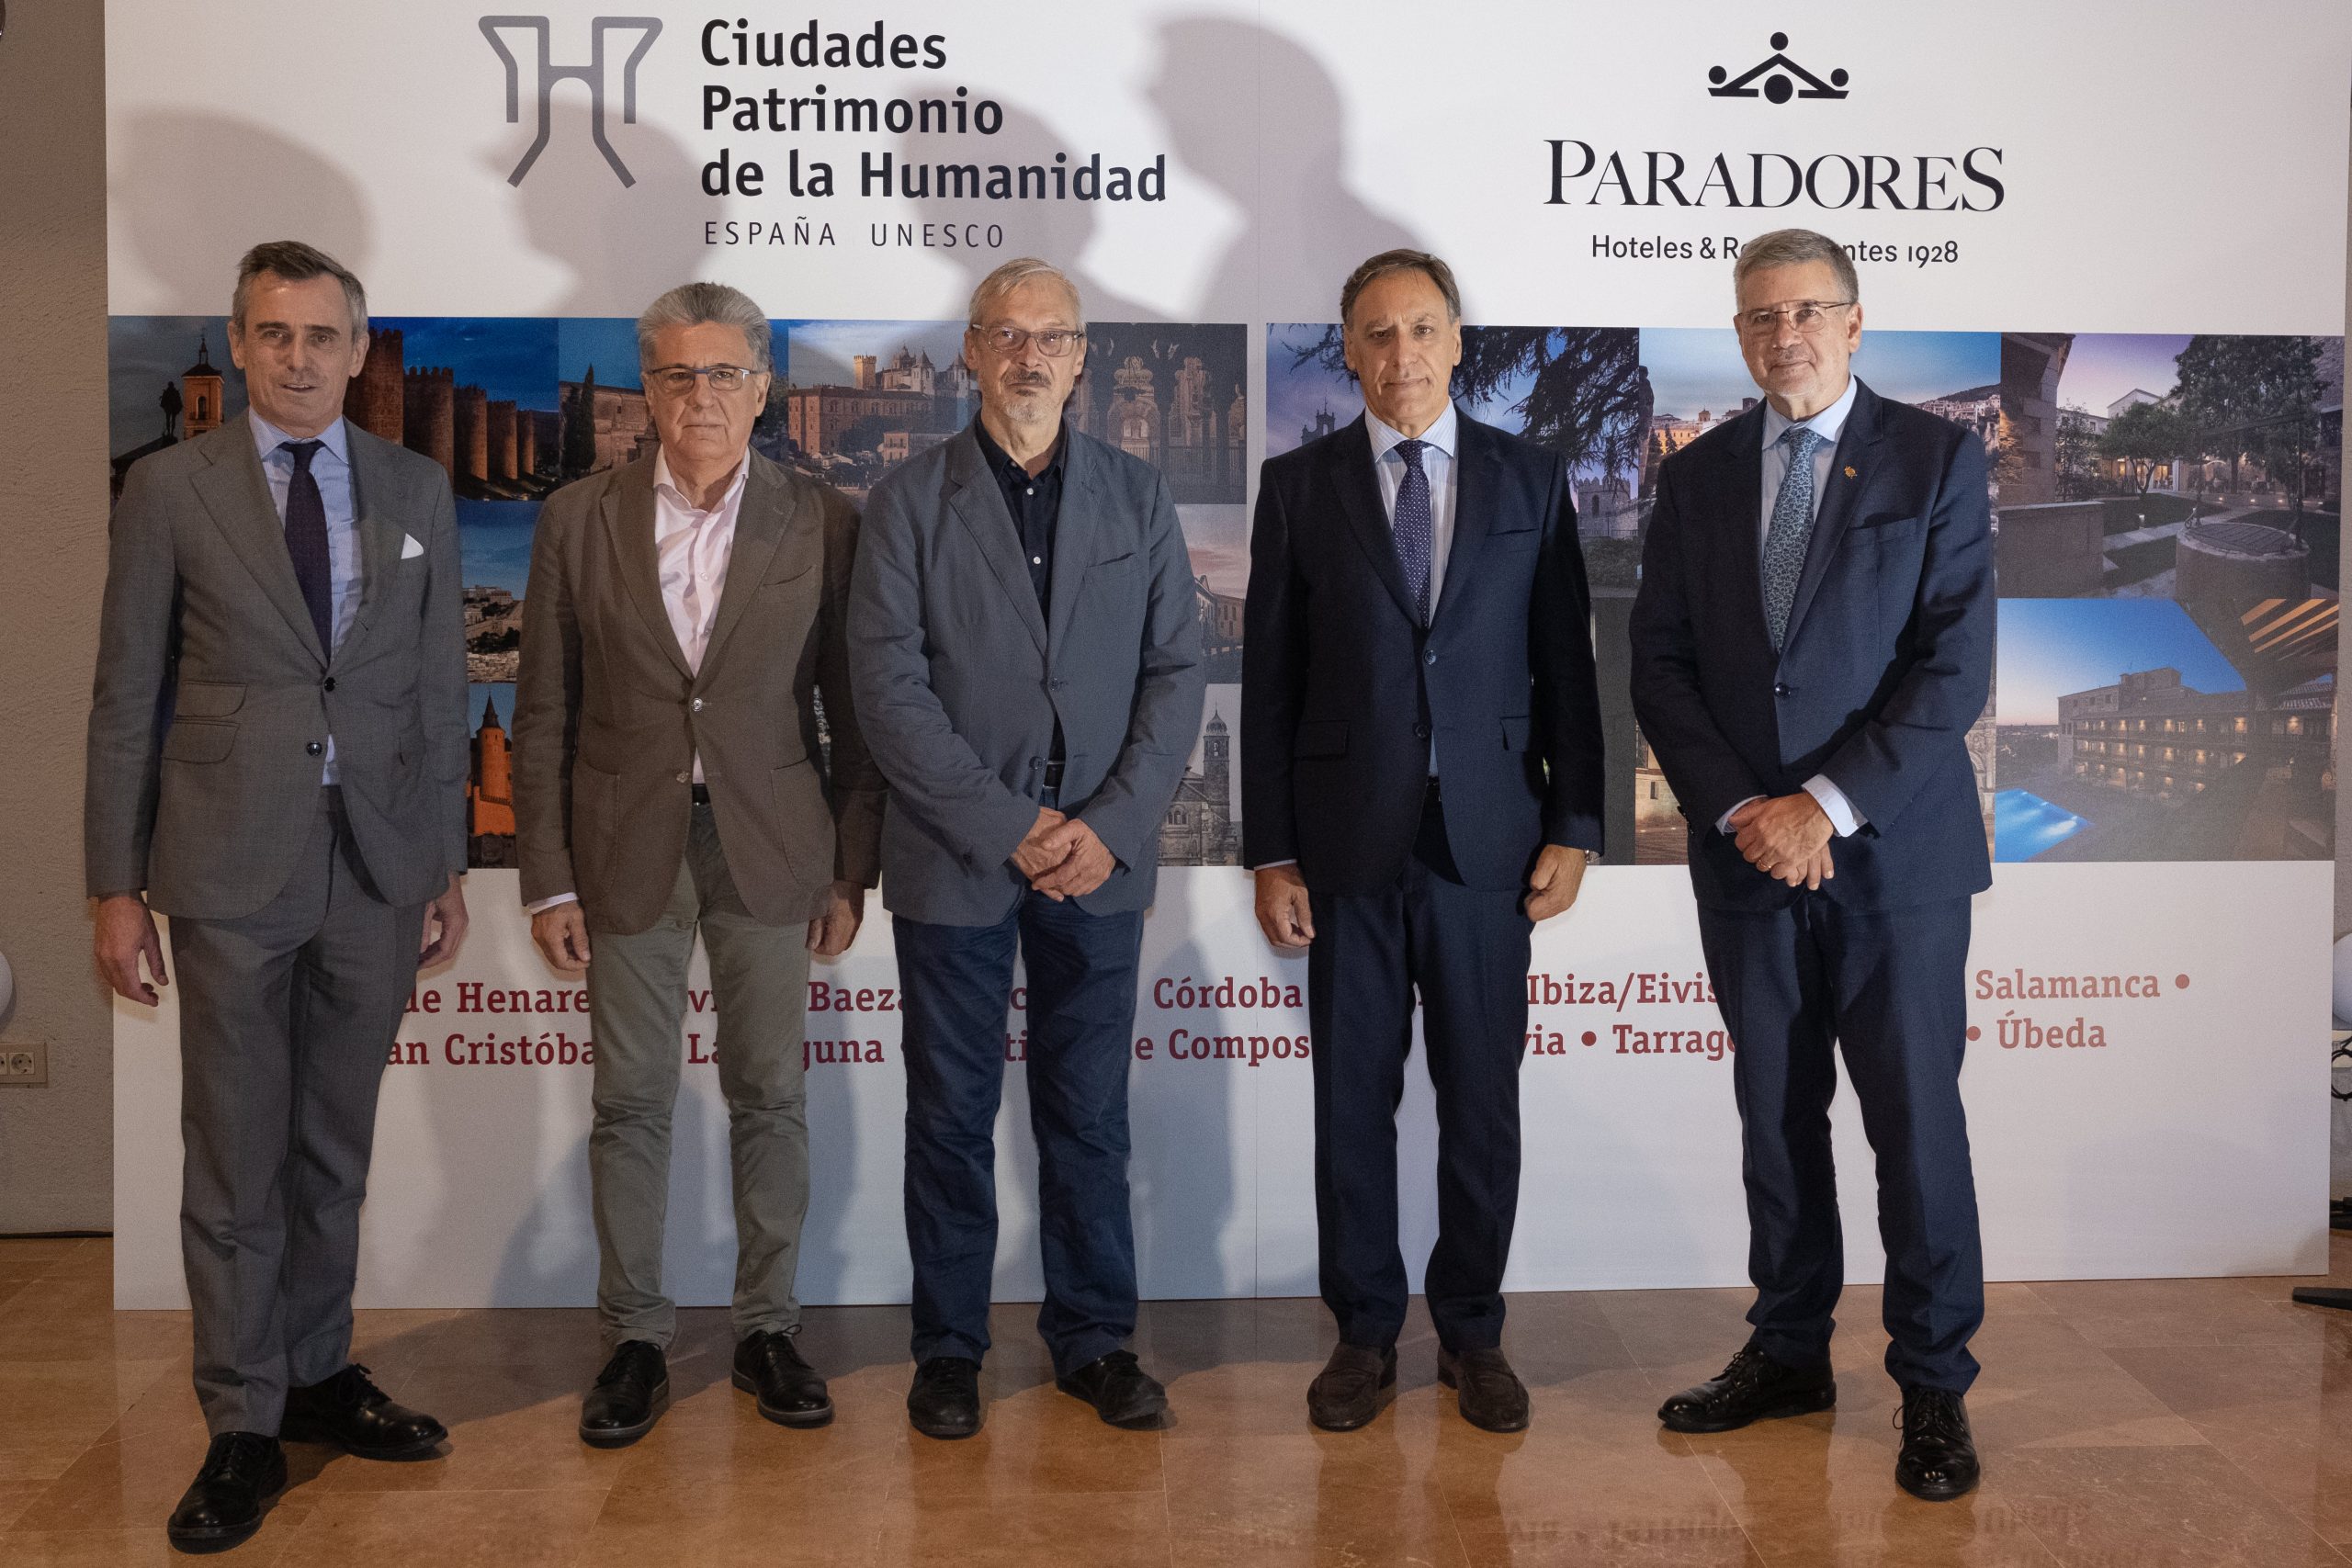 Paradores presenta su oferta turística junto a Ciudades Patrimonio de la Humanidad de España